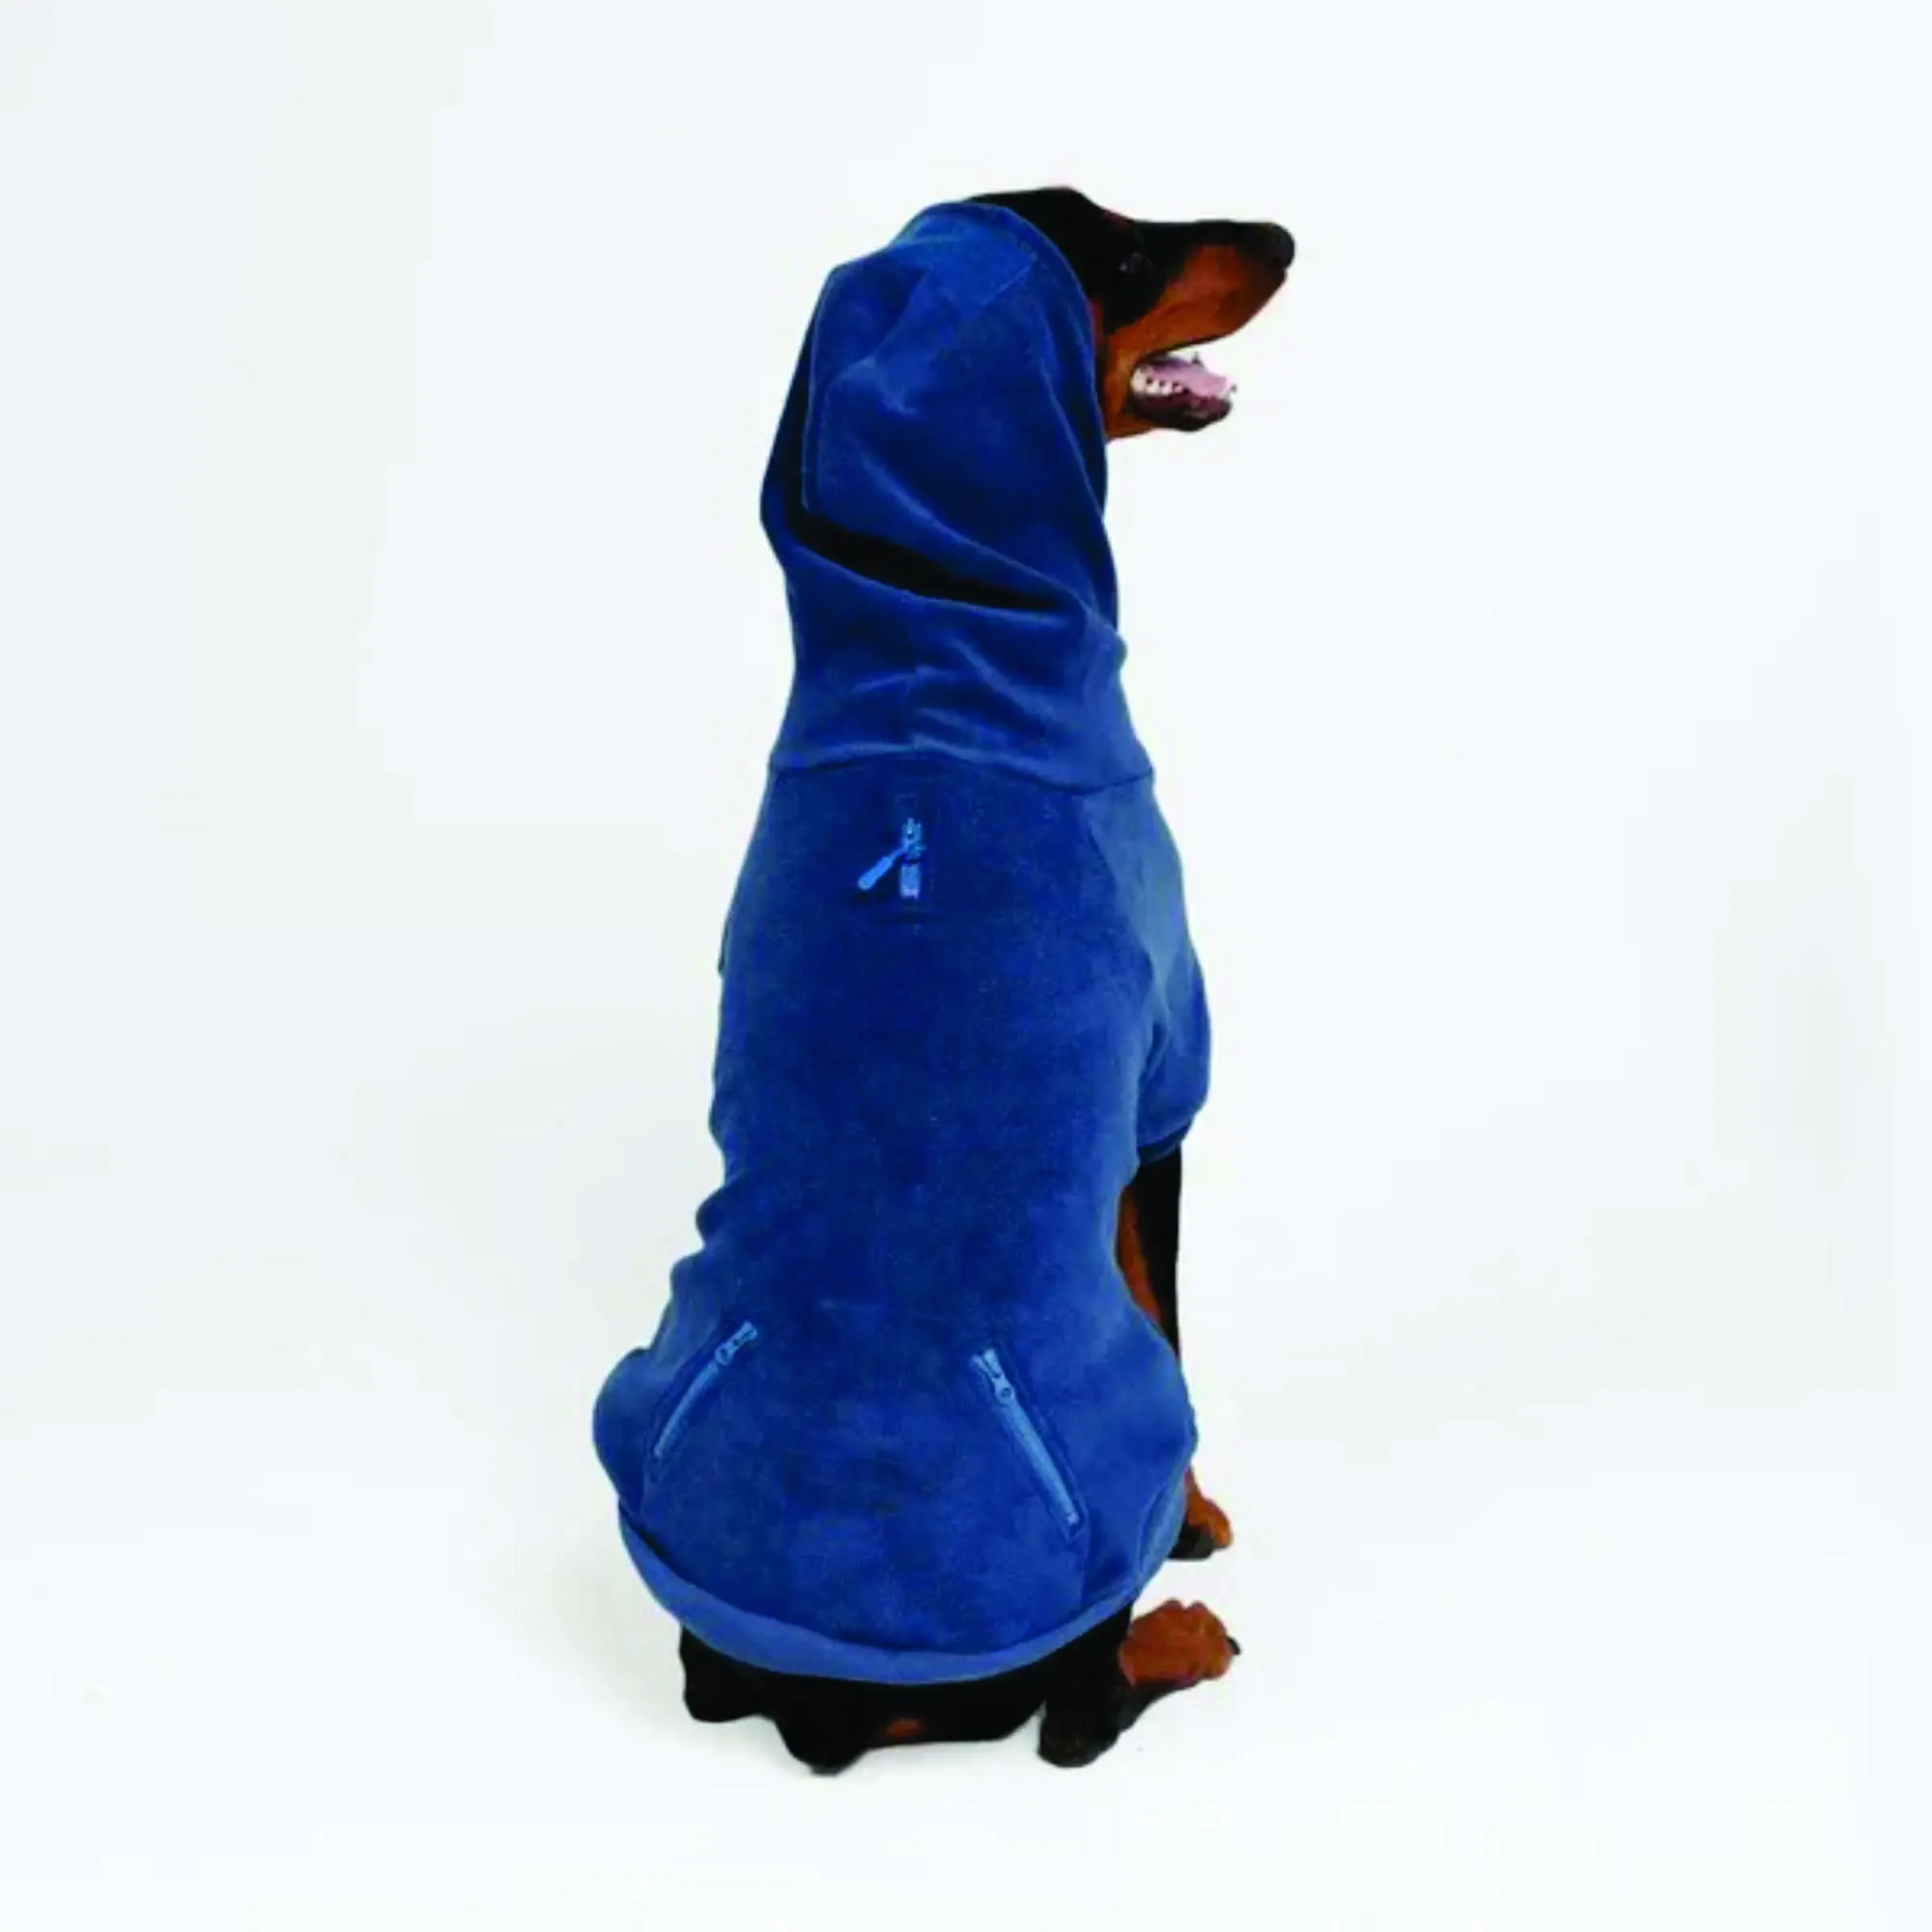 OEM कस्टम निर्माता थोक सस्ते बहुरंगा नरम ऊन गर्म पालतू कस्टम हुडी खाली कुत्ते के कपड़े बिक्री के लिए